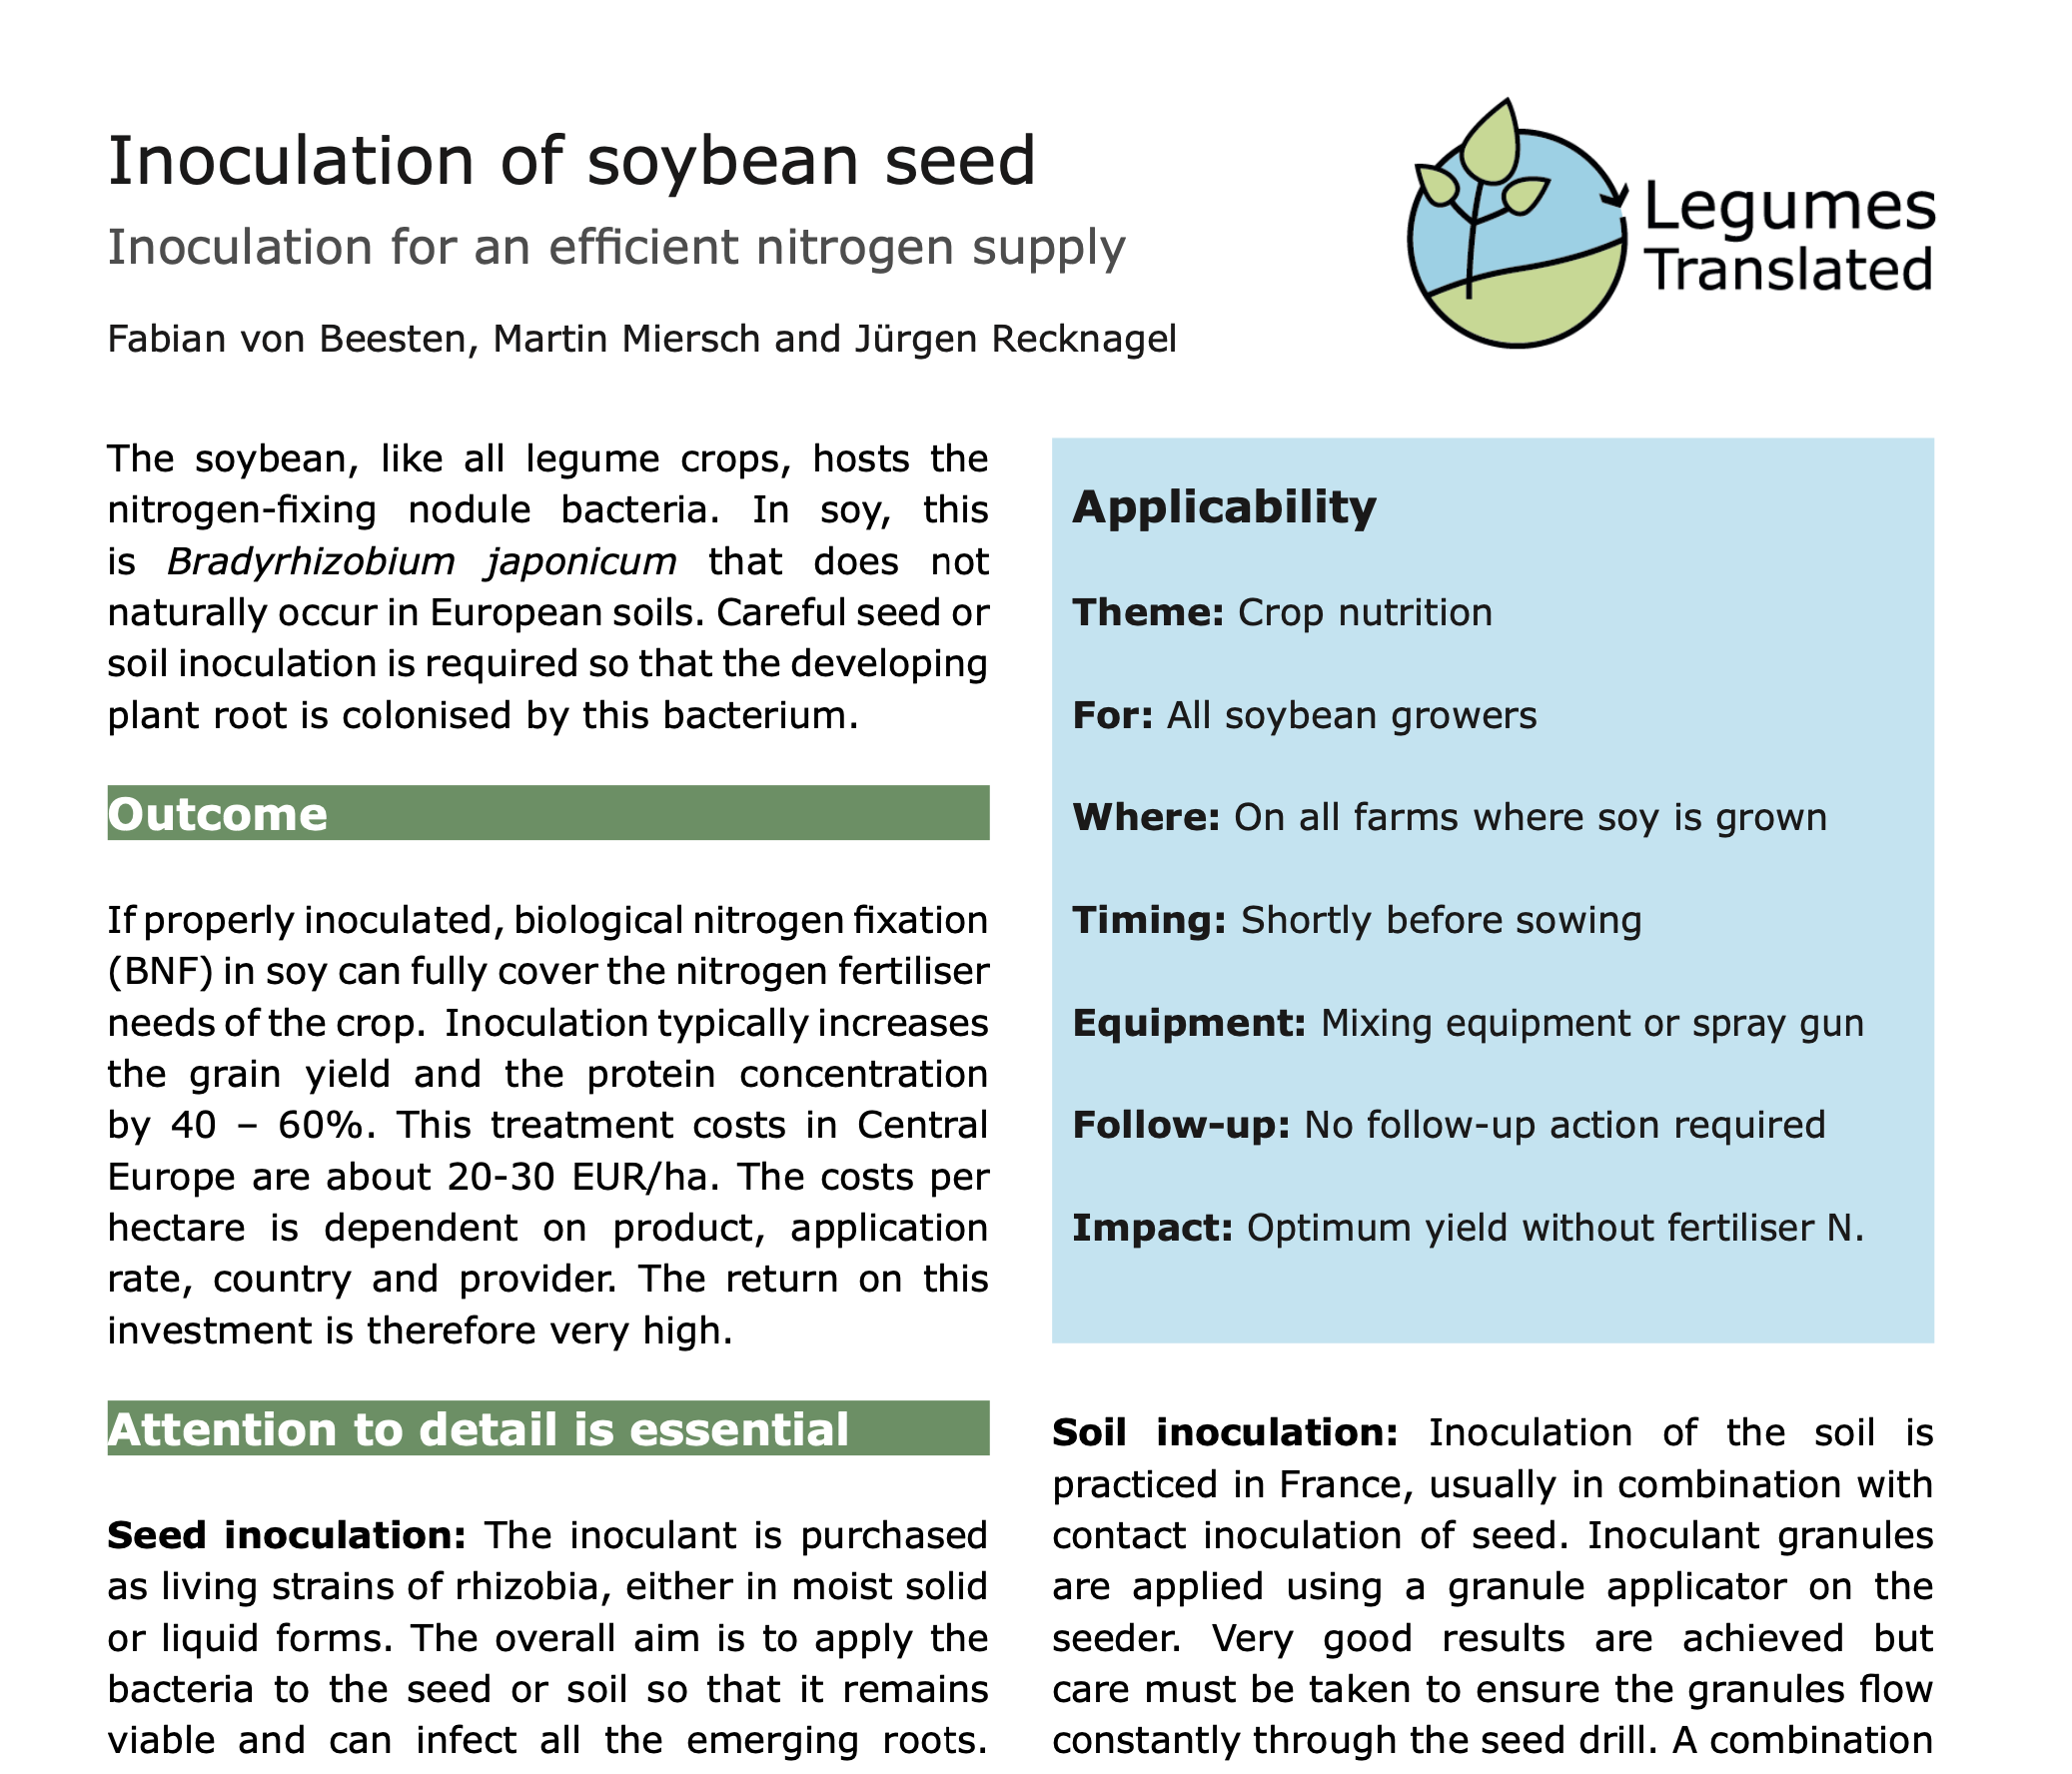 Inoculación de semilla de soja: inoculación para un suministro eficiente de nitrógeno